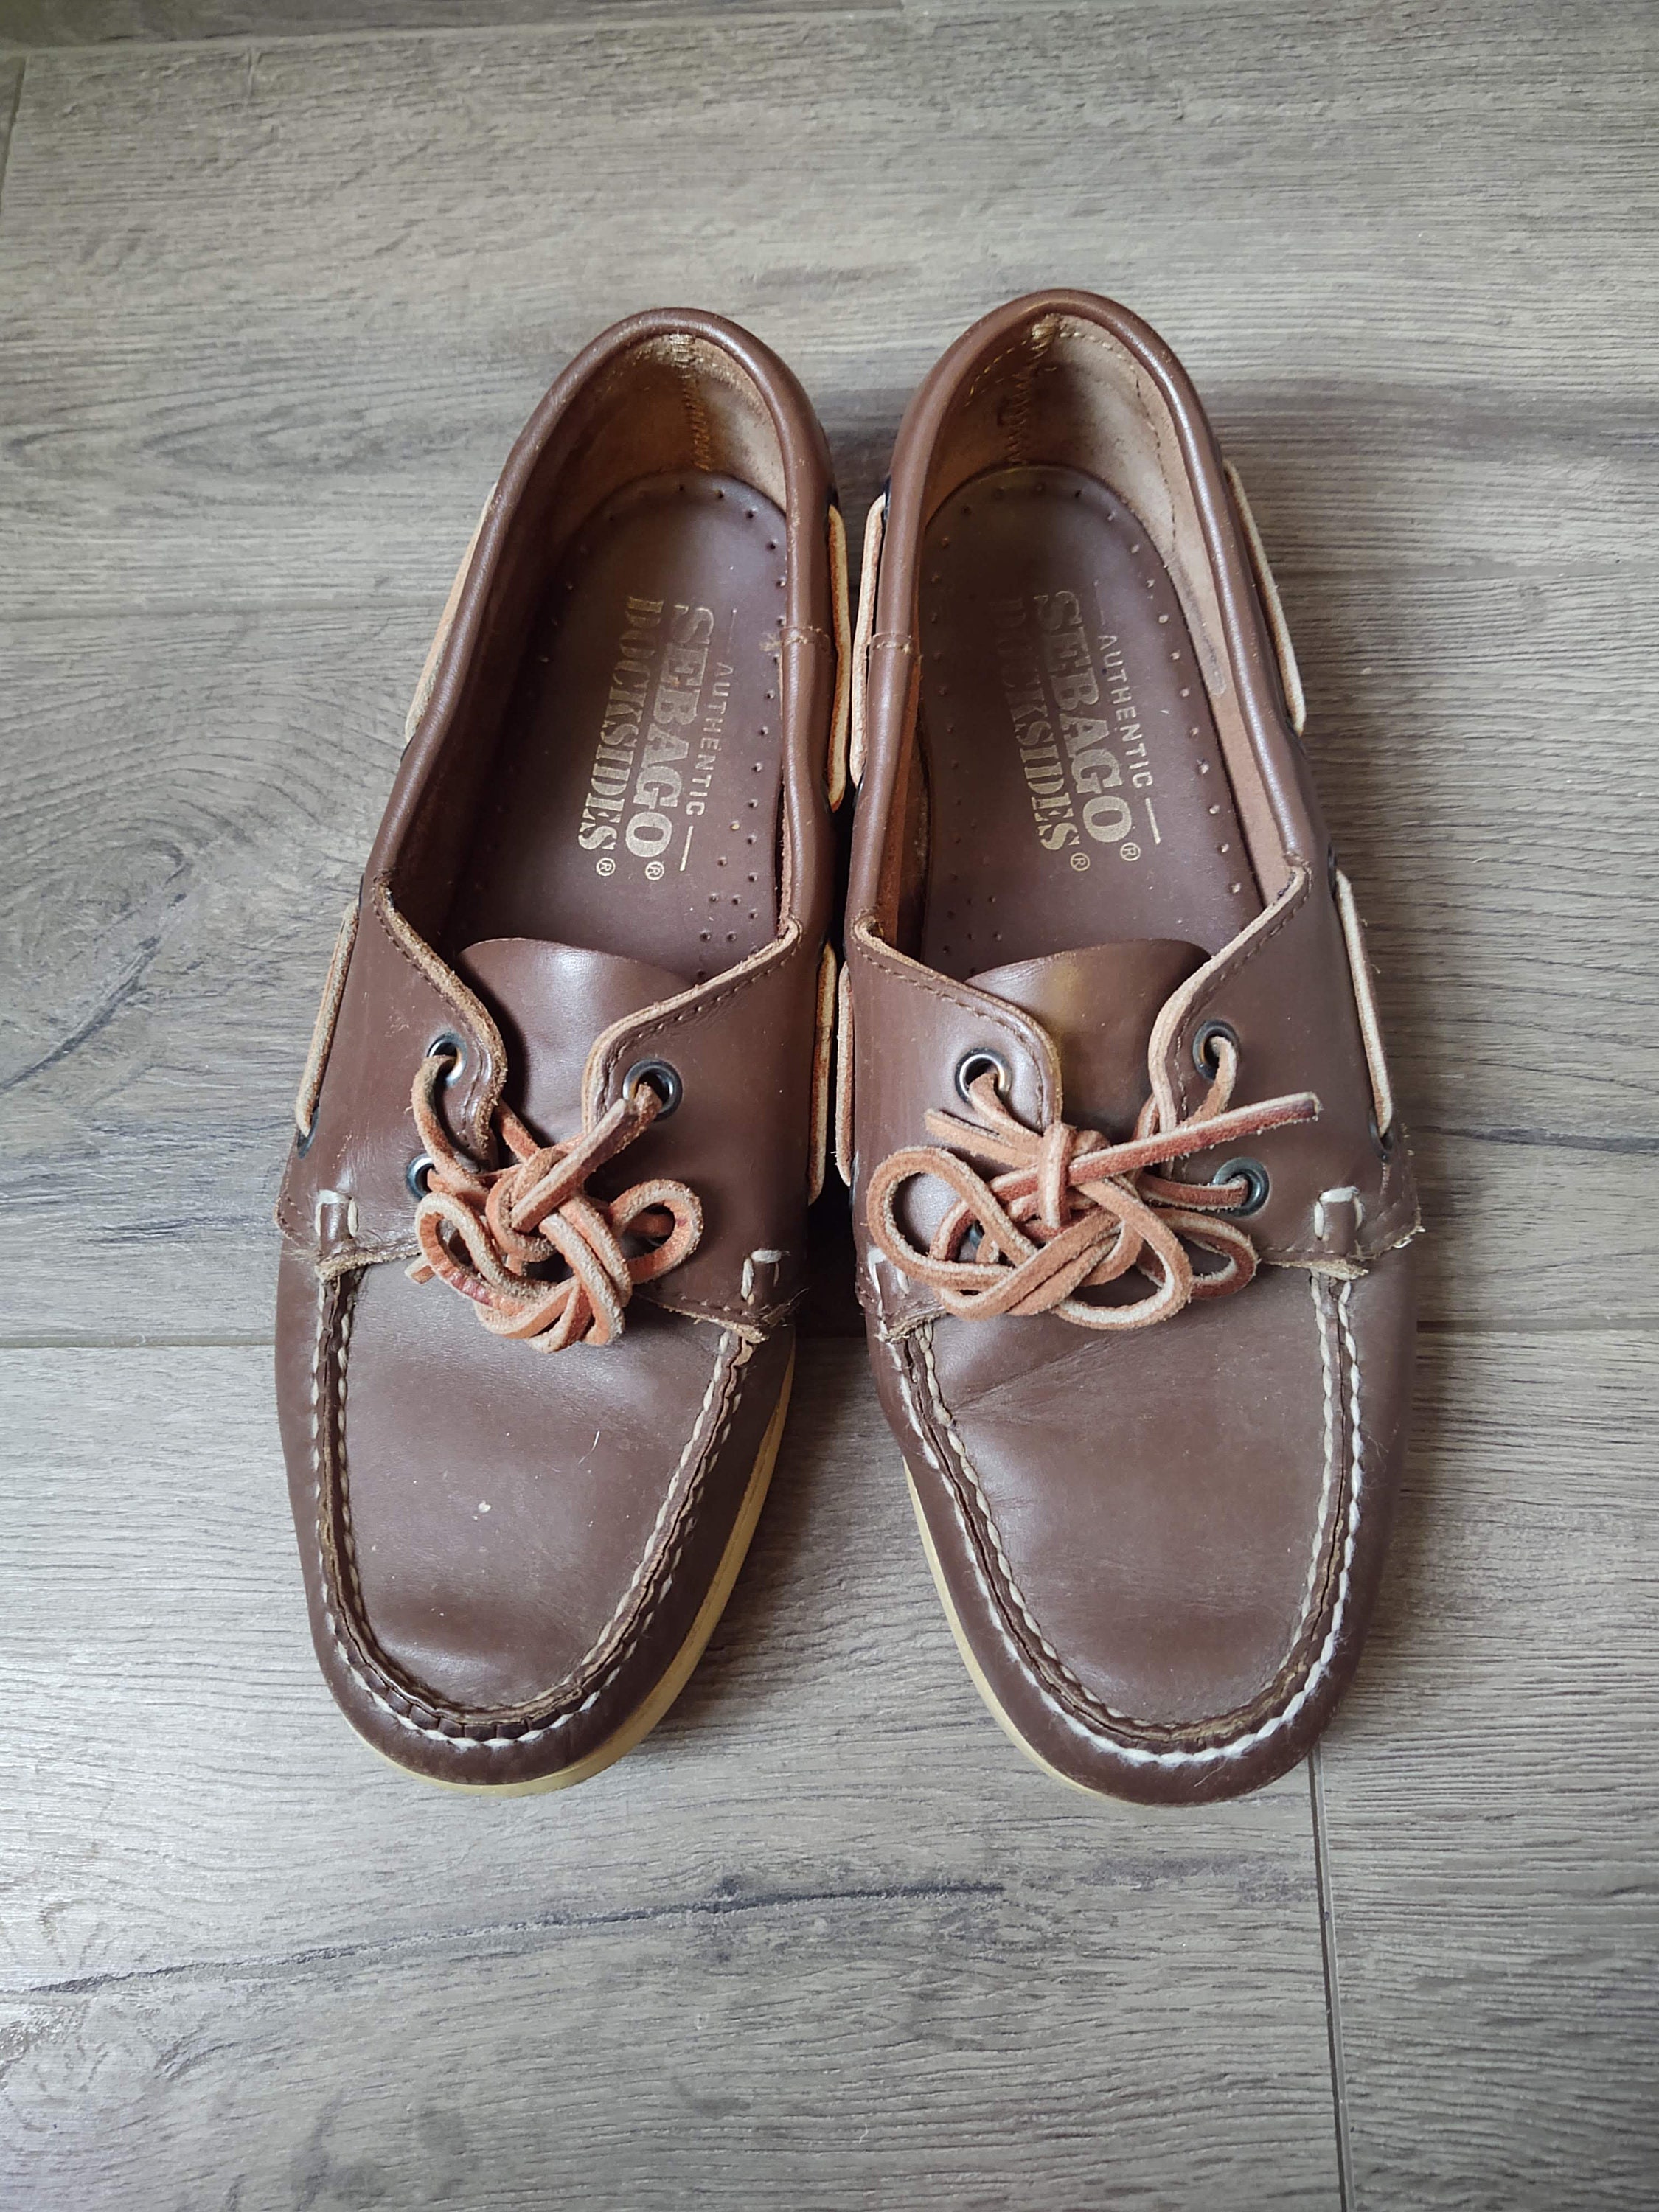 Vintage Sebago Docksides Leather Boat Shoes Loafers Mens Size - Etsy